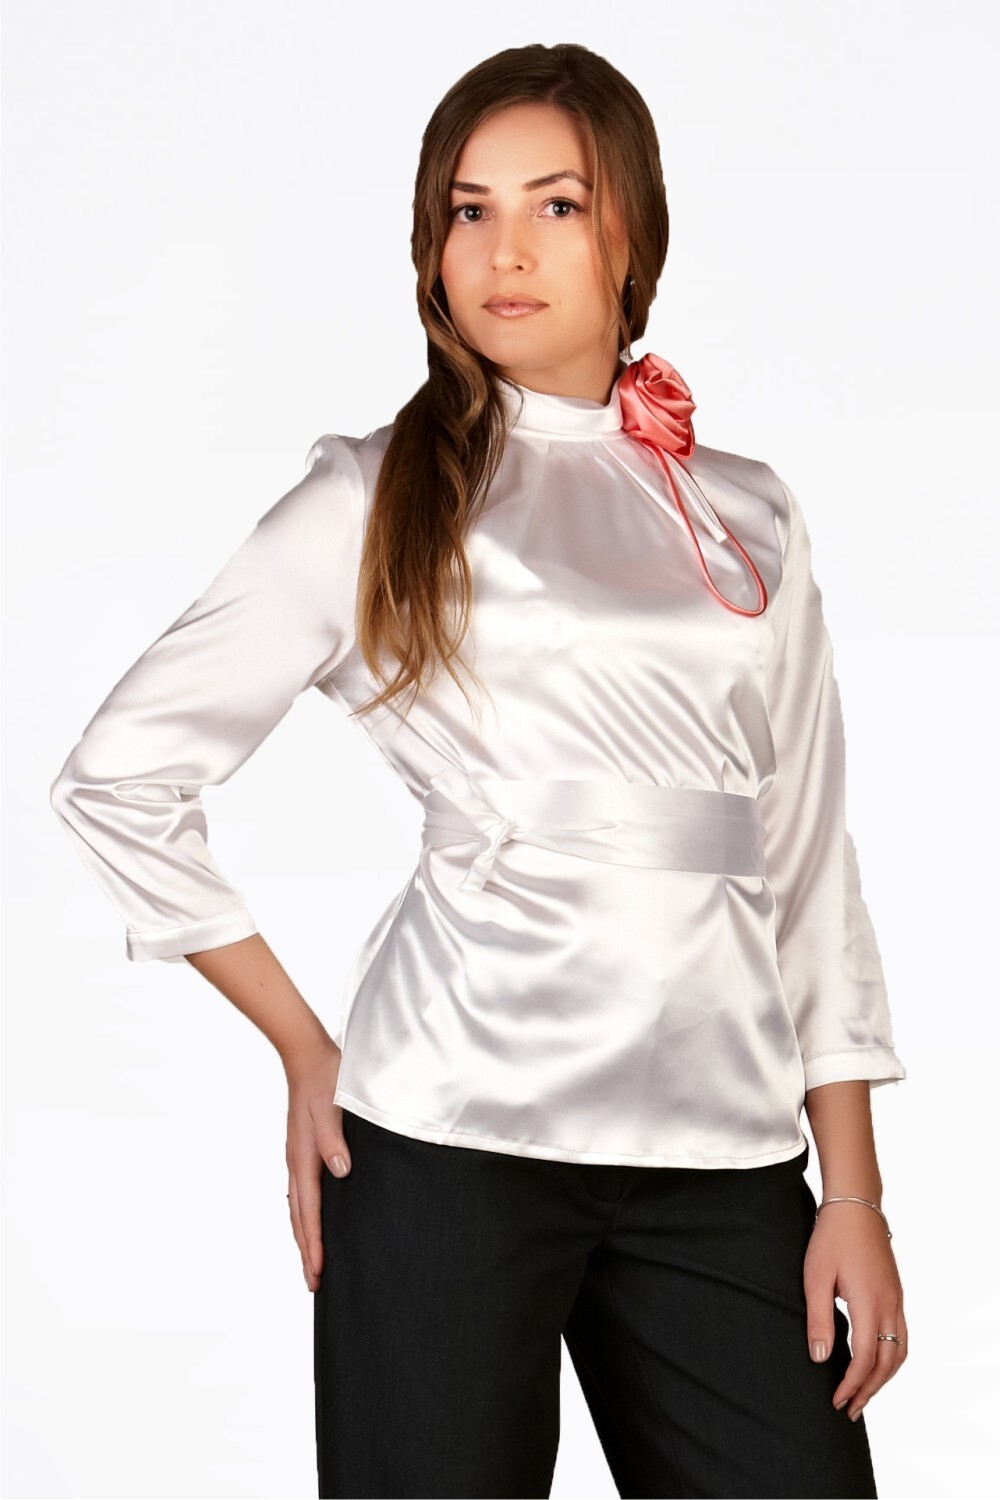 Недорогие блузки интернете. Белая блузка. Блузки из атласа. Белая нарядная блузка для женщин. Белая атласная блузка.